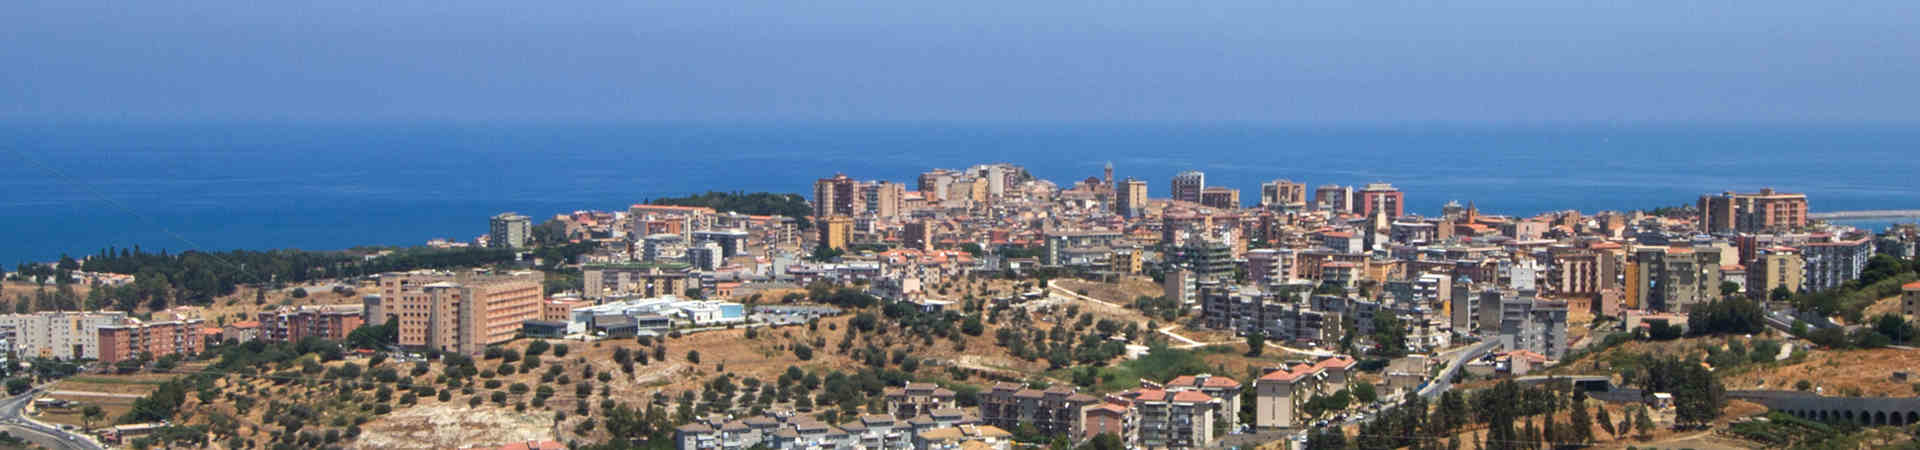 Immagine del porto di arrivo Palermo (Termini Imerese) per la rotta traghetto Civitavecchia - Palermo (Termini Imerese)